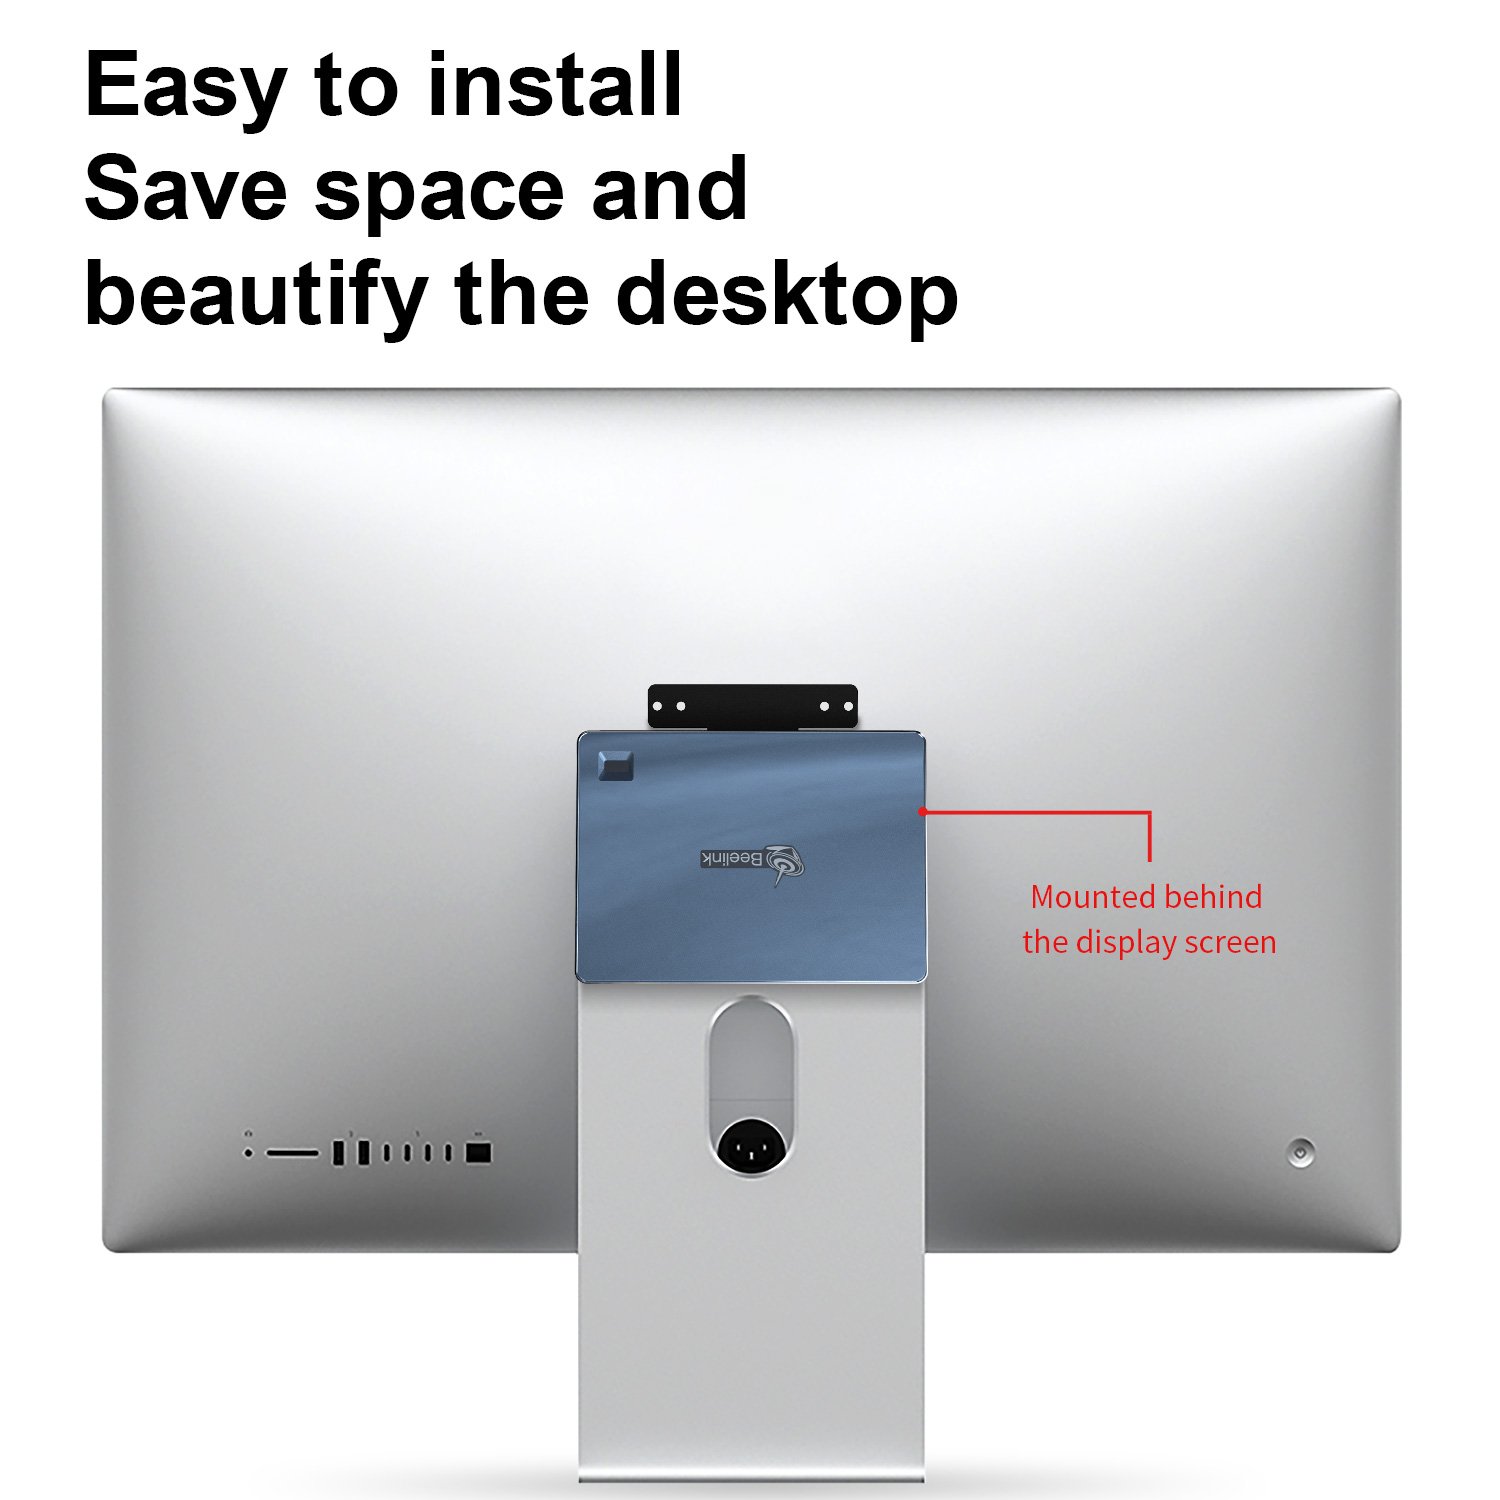 Beelink GTR-7 Easy to install to the desktop